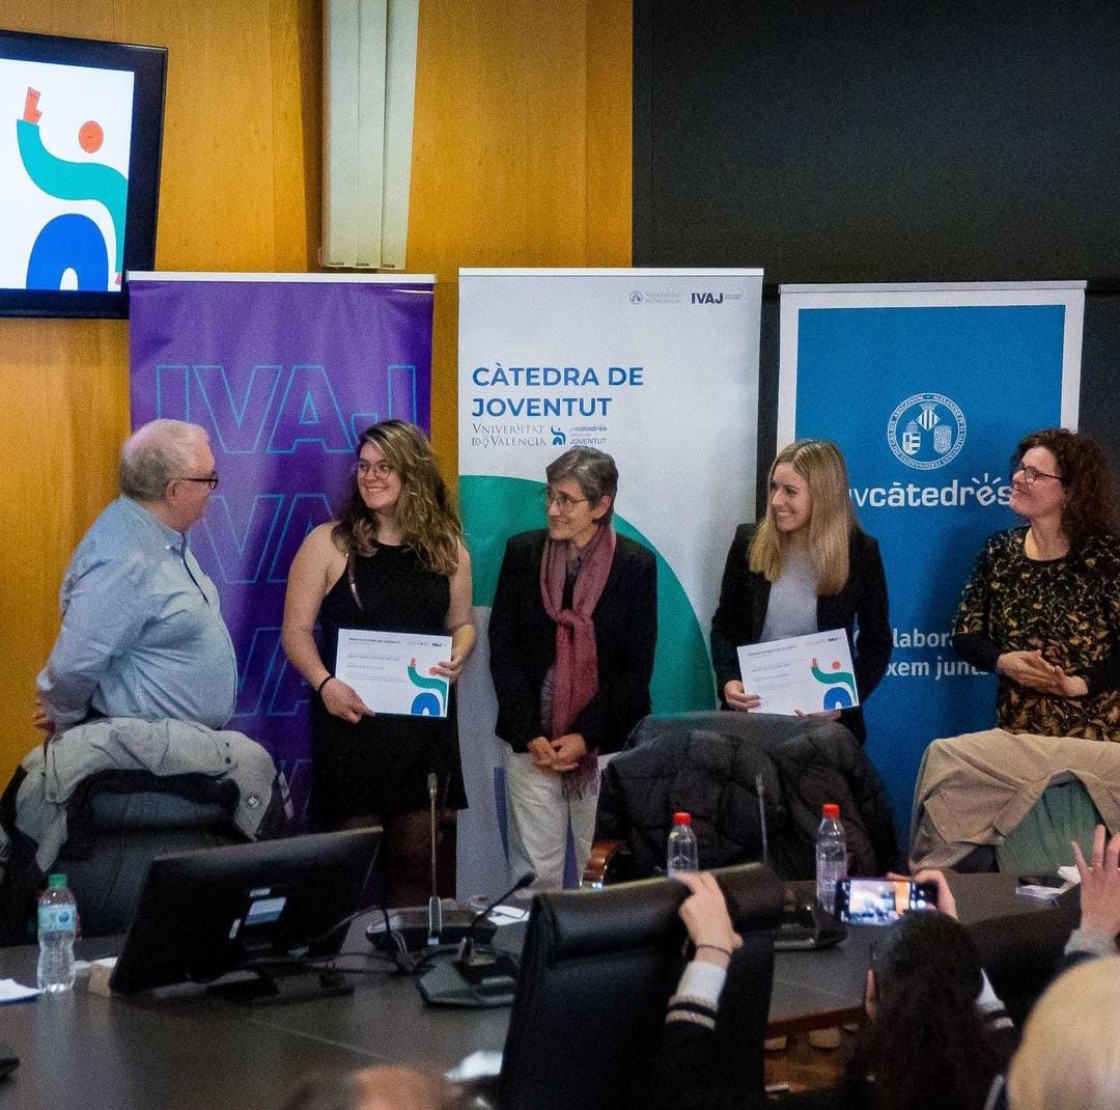 La Universidad de Valencia premia un Trabajo Fin de Grado sobre juventud y desarrollo rural